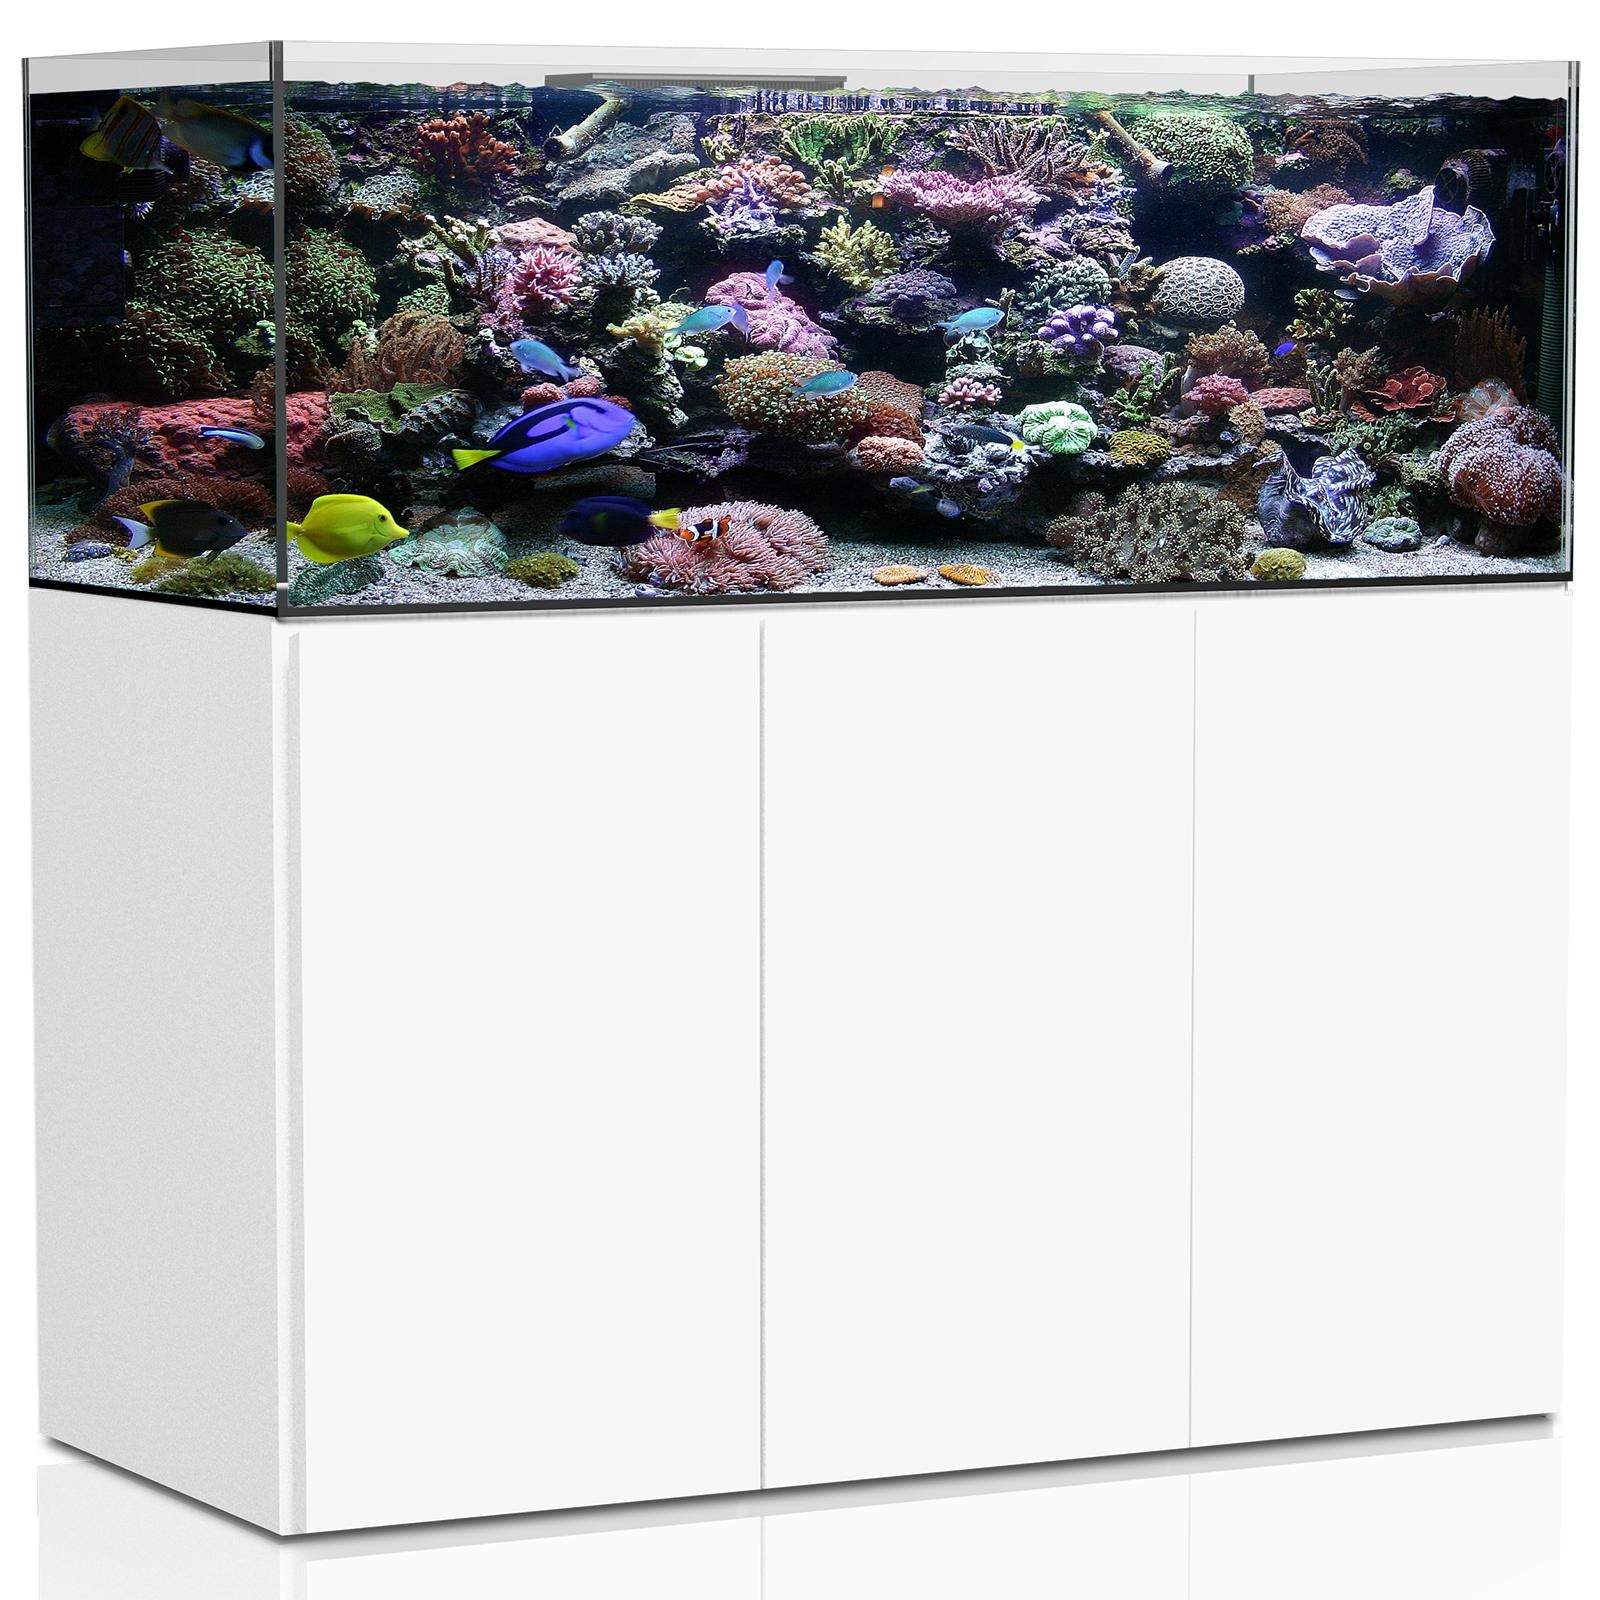  Aqua Medic Aquarium - Armatus 375 XD white